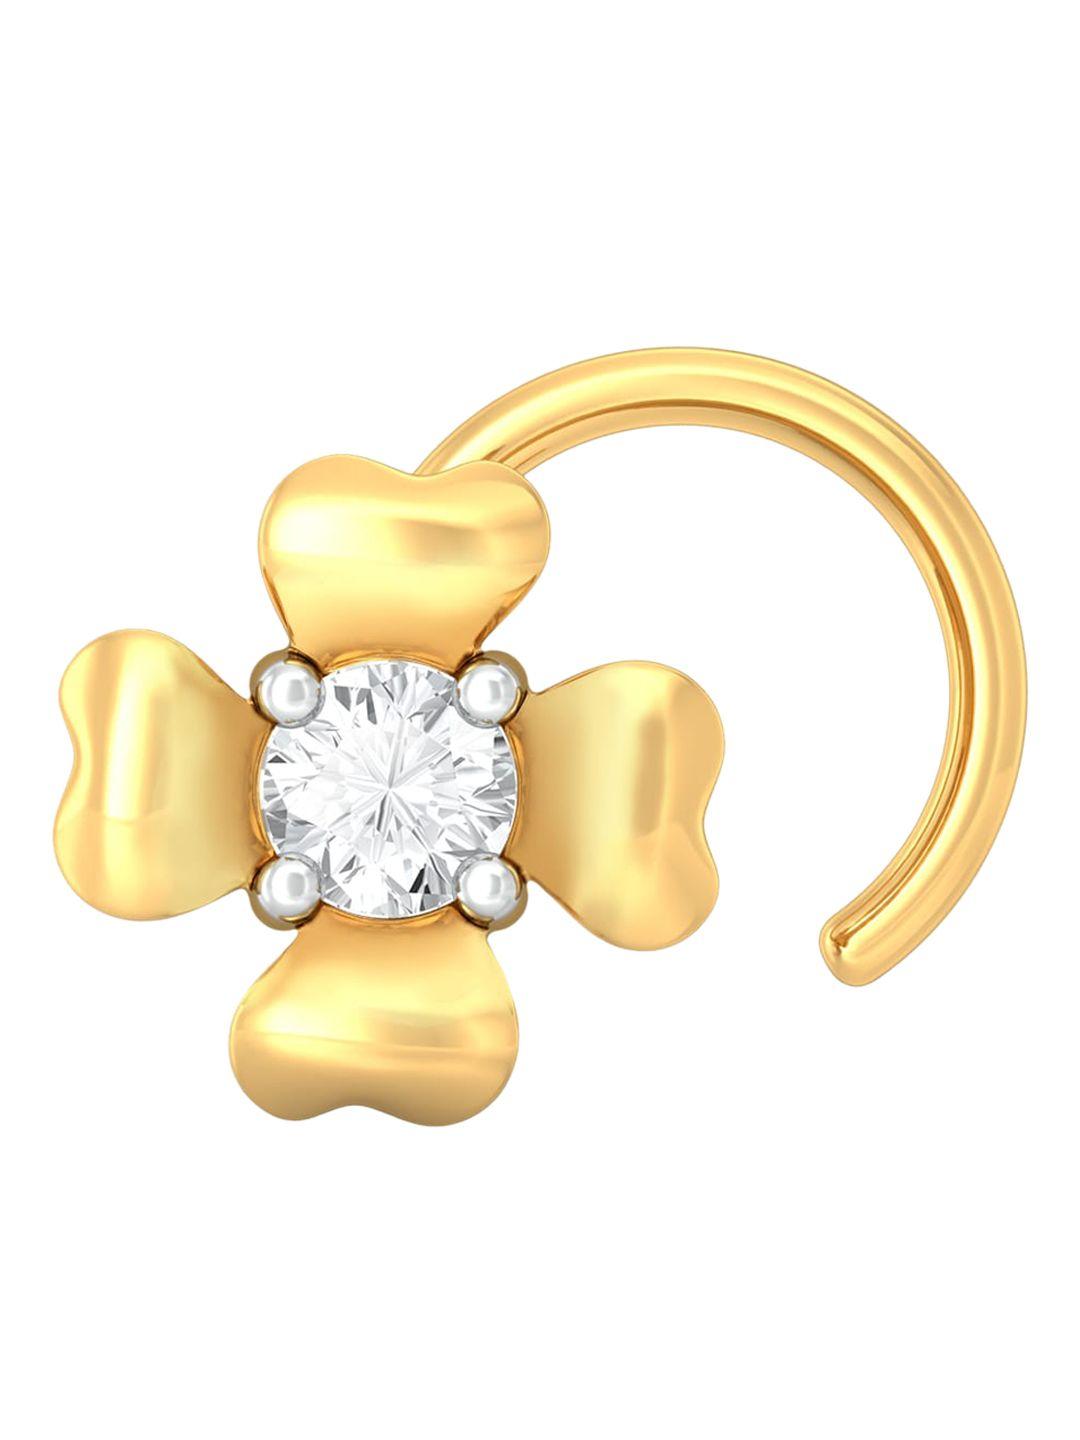 melorra la fleur 18kt gold diamond nose pin